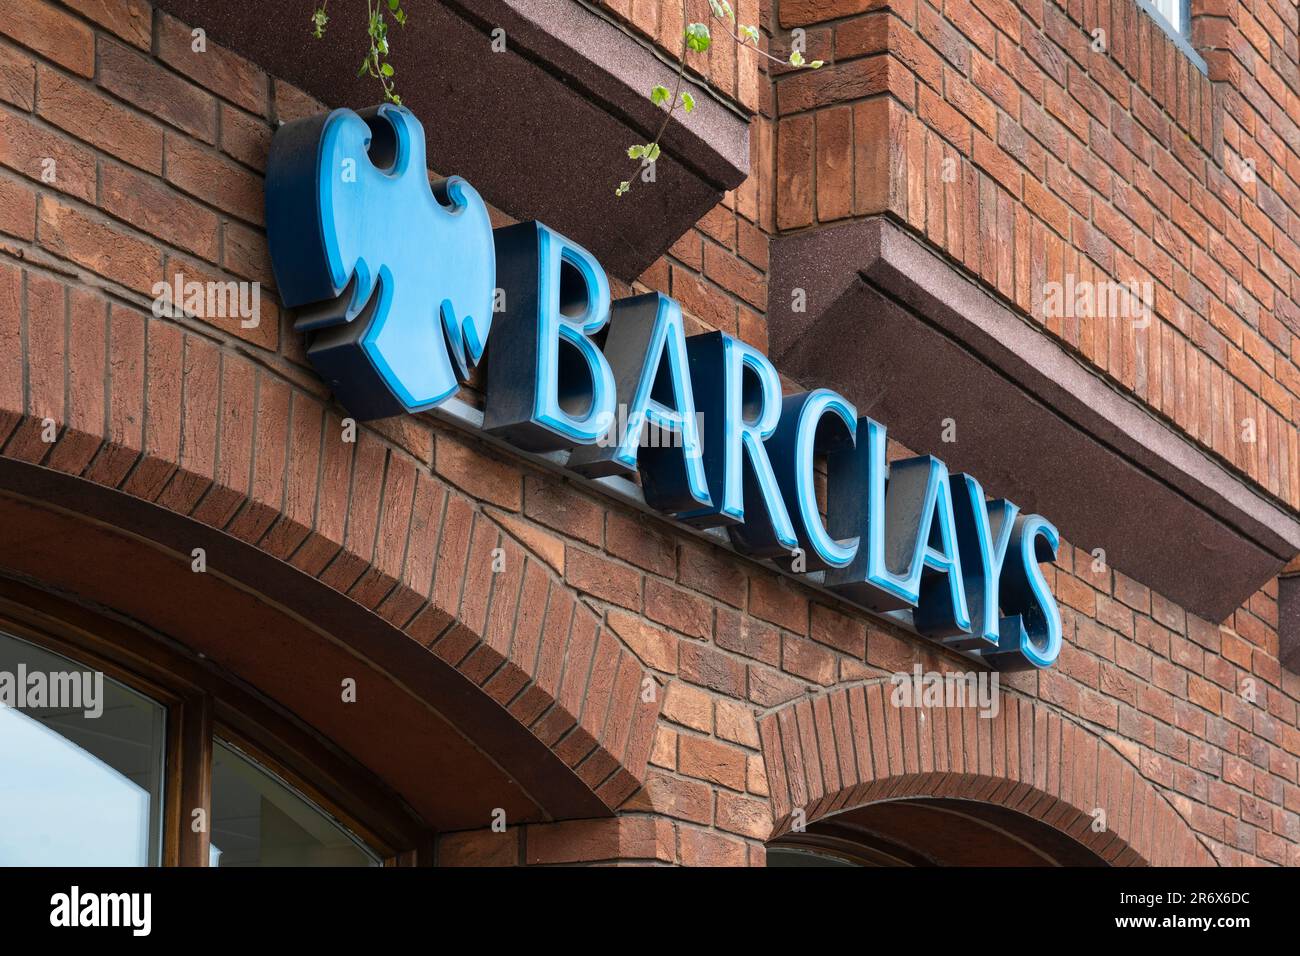 Logo et lettrage Barclays Bank sur une succursale des quatre grandes banques de rue britanniques, Farham, Royaume-Uni. Concept : banque de rue, crise bancaire, transactions hypothécaires Banque D'Images